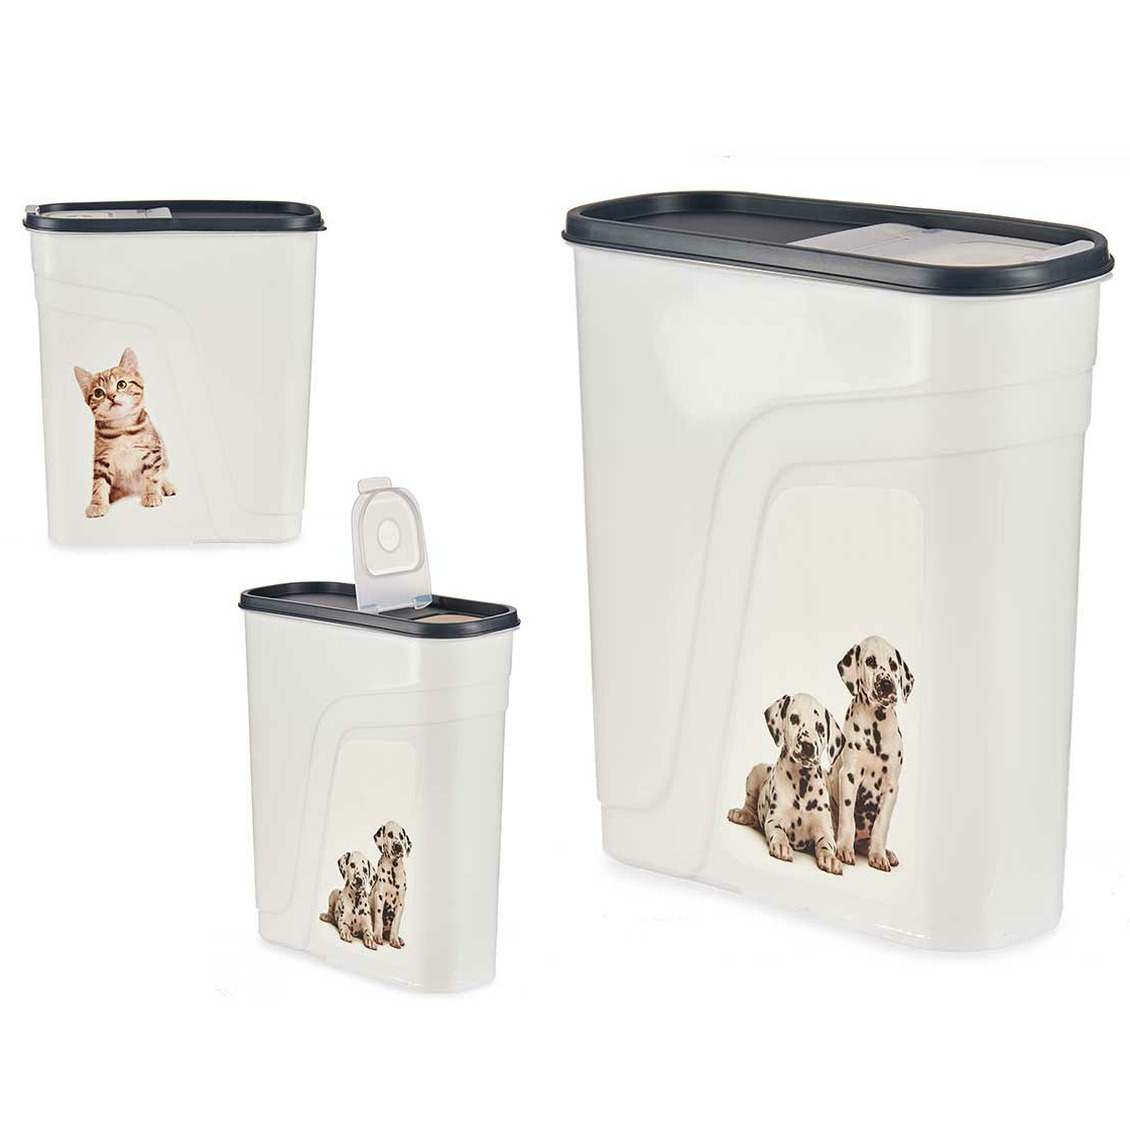 Gondol huisdieren voedsel-voercontainer voorraad box kunststof 4.0 liter strooibus dispenser